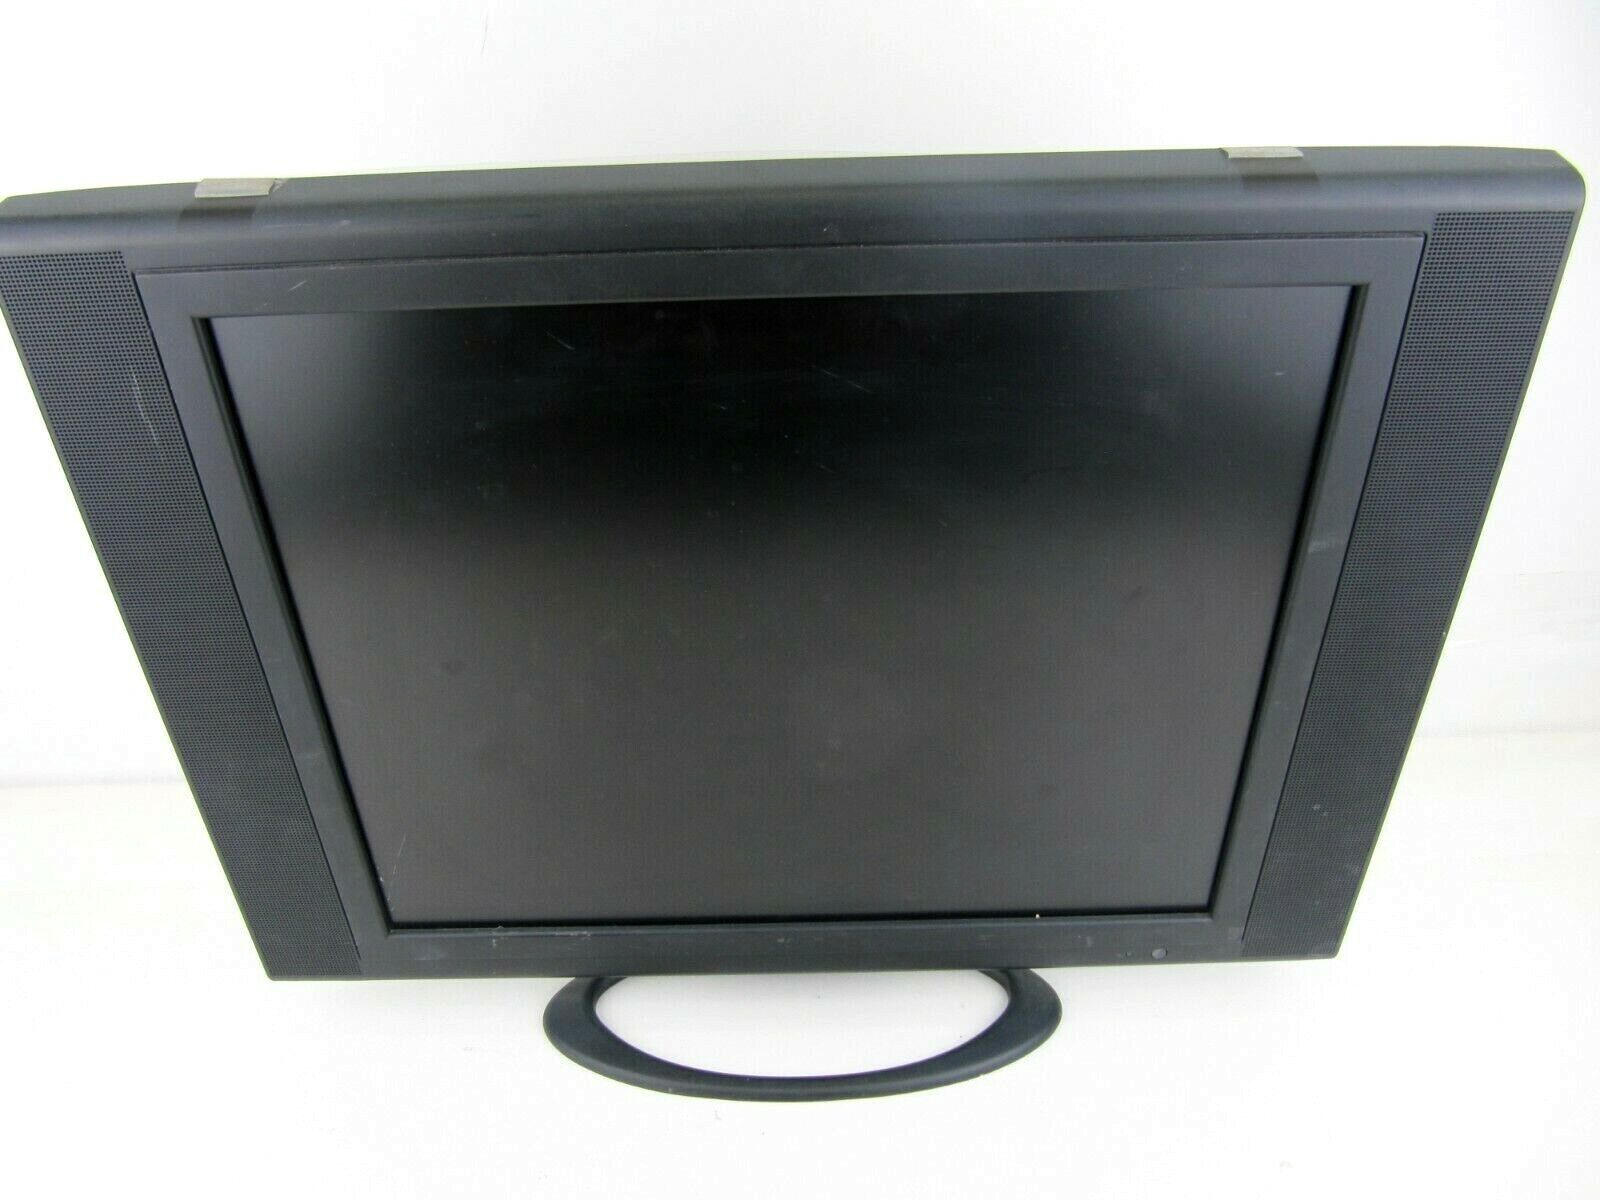 TCL 19" LCD MONITOR TV VGA DVI S-VIDEO AV LCDTV1940BK STEREO SPEAKERS BLACK